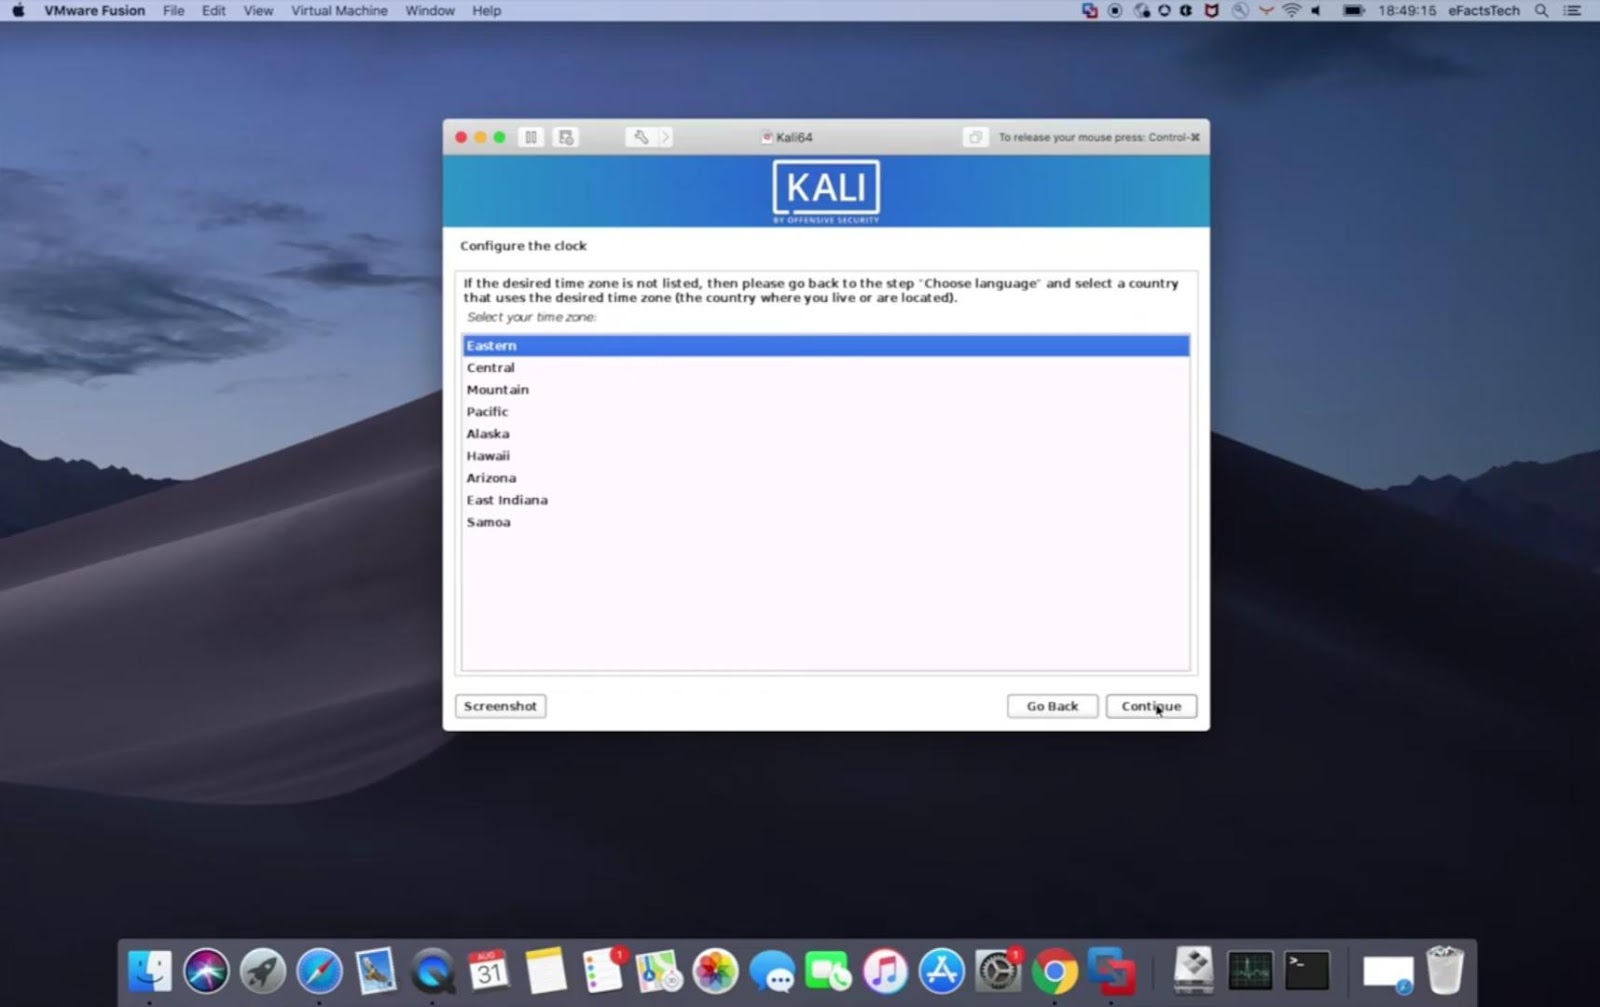 RePWZ6vknVy2Z6daaRdCyKGc YAAJOSHLtB4ztNe R6FwtNUuRnoSpvY4JwEOG8wS NcnTCq9yypY - How to install Kali Linux on Mac